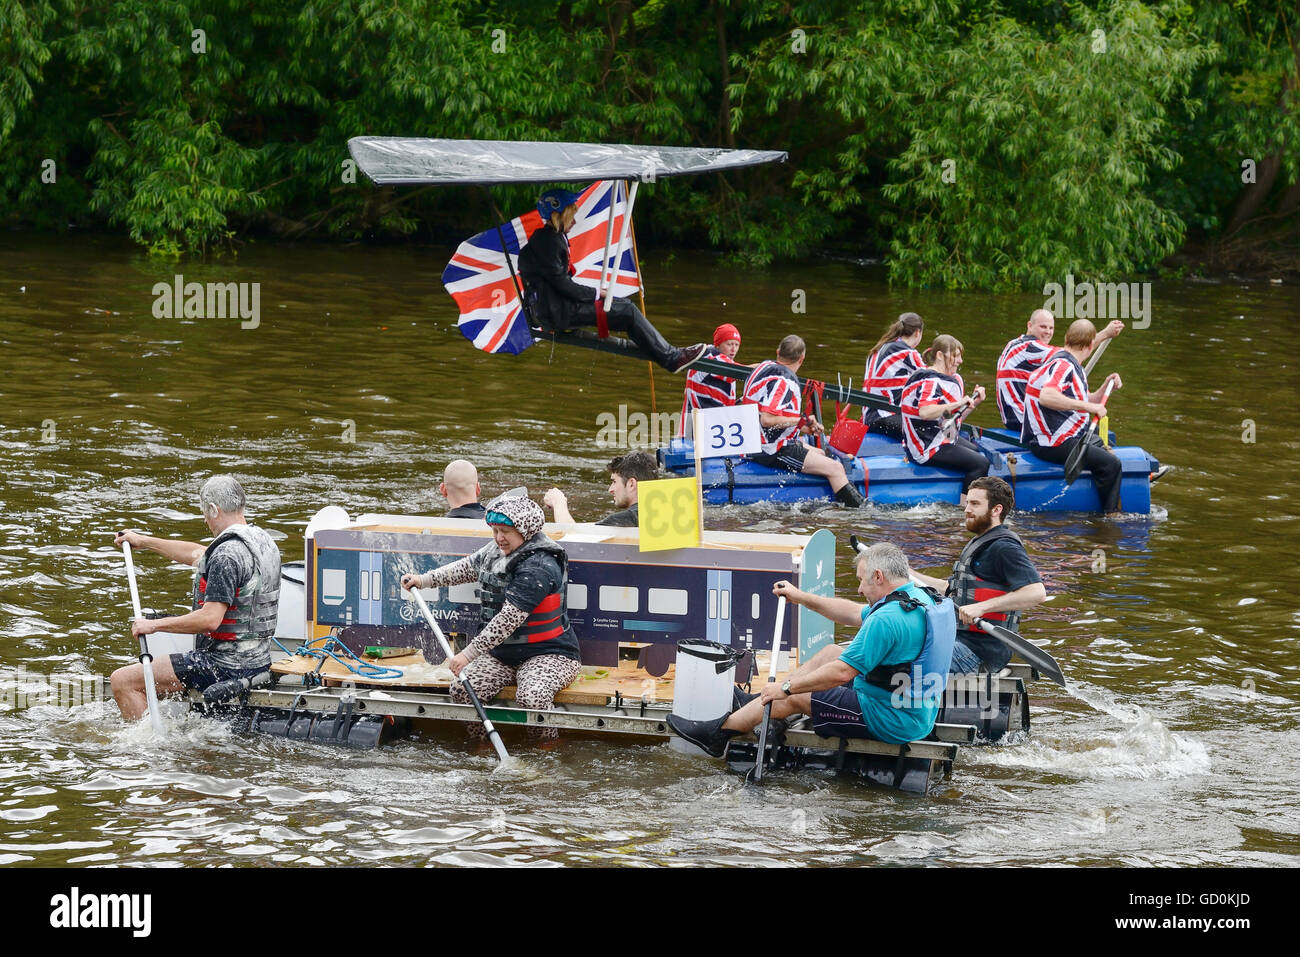 Chester, Royaume-Uni. 10 juillet 2016. Le radeau de bienfaisance annuel de la race sur la rivière Dee organisée par le Rotary Club de Chester. Banque D'Images